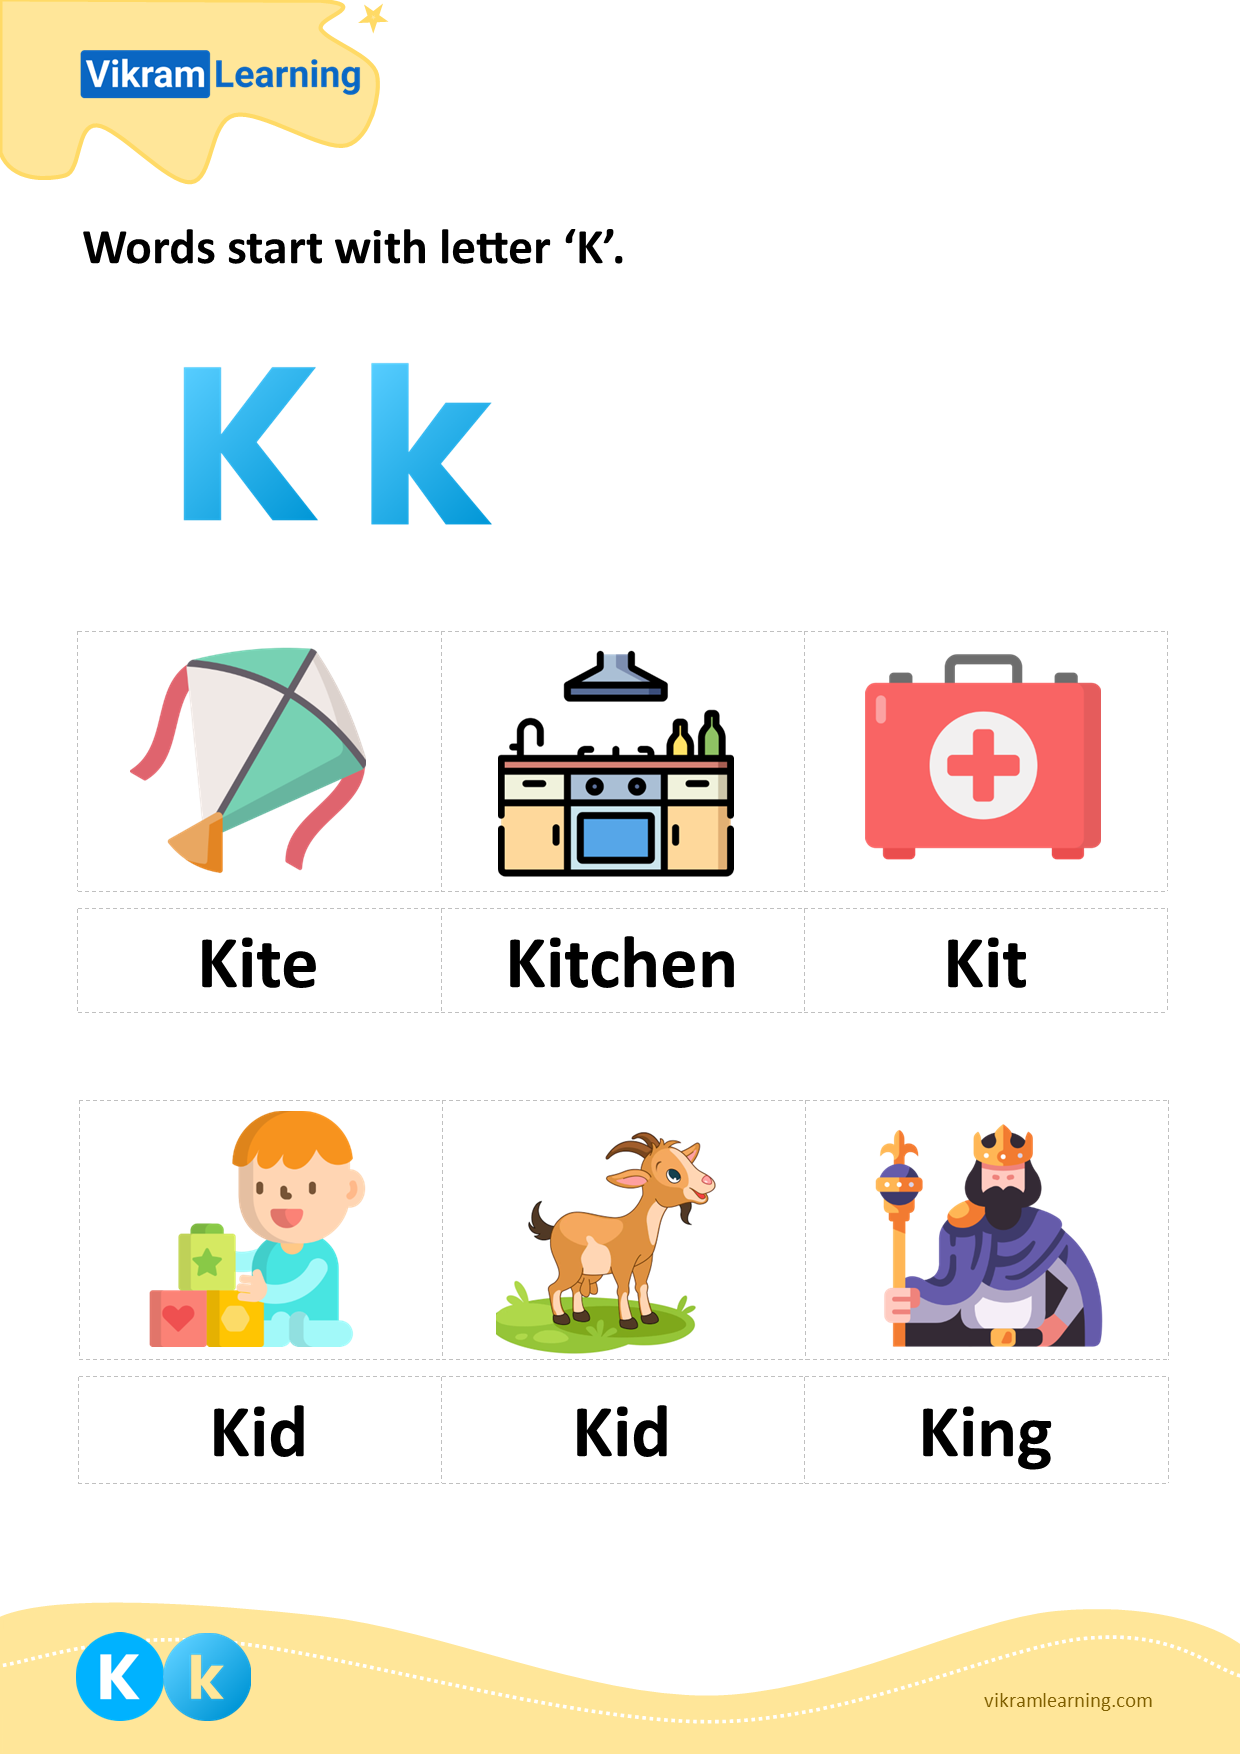 Download words start with letter 'k' worksheets